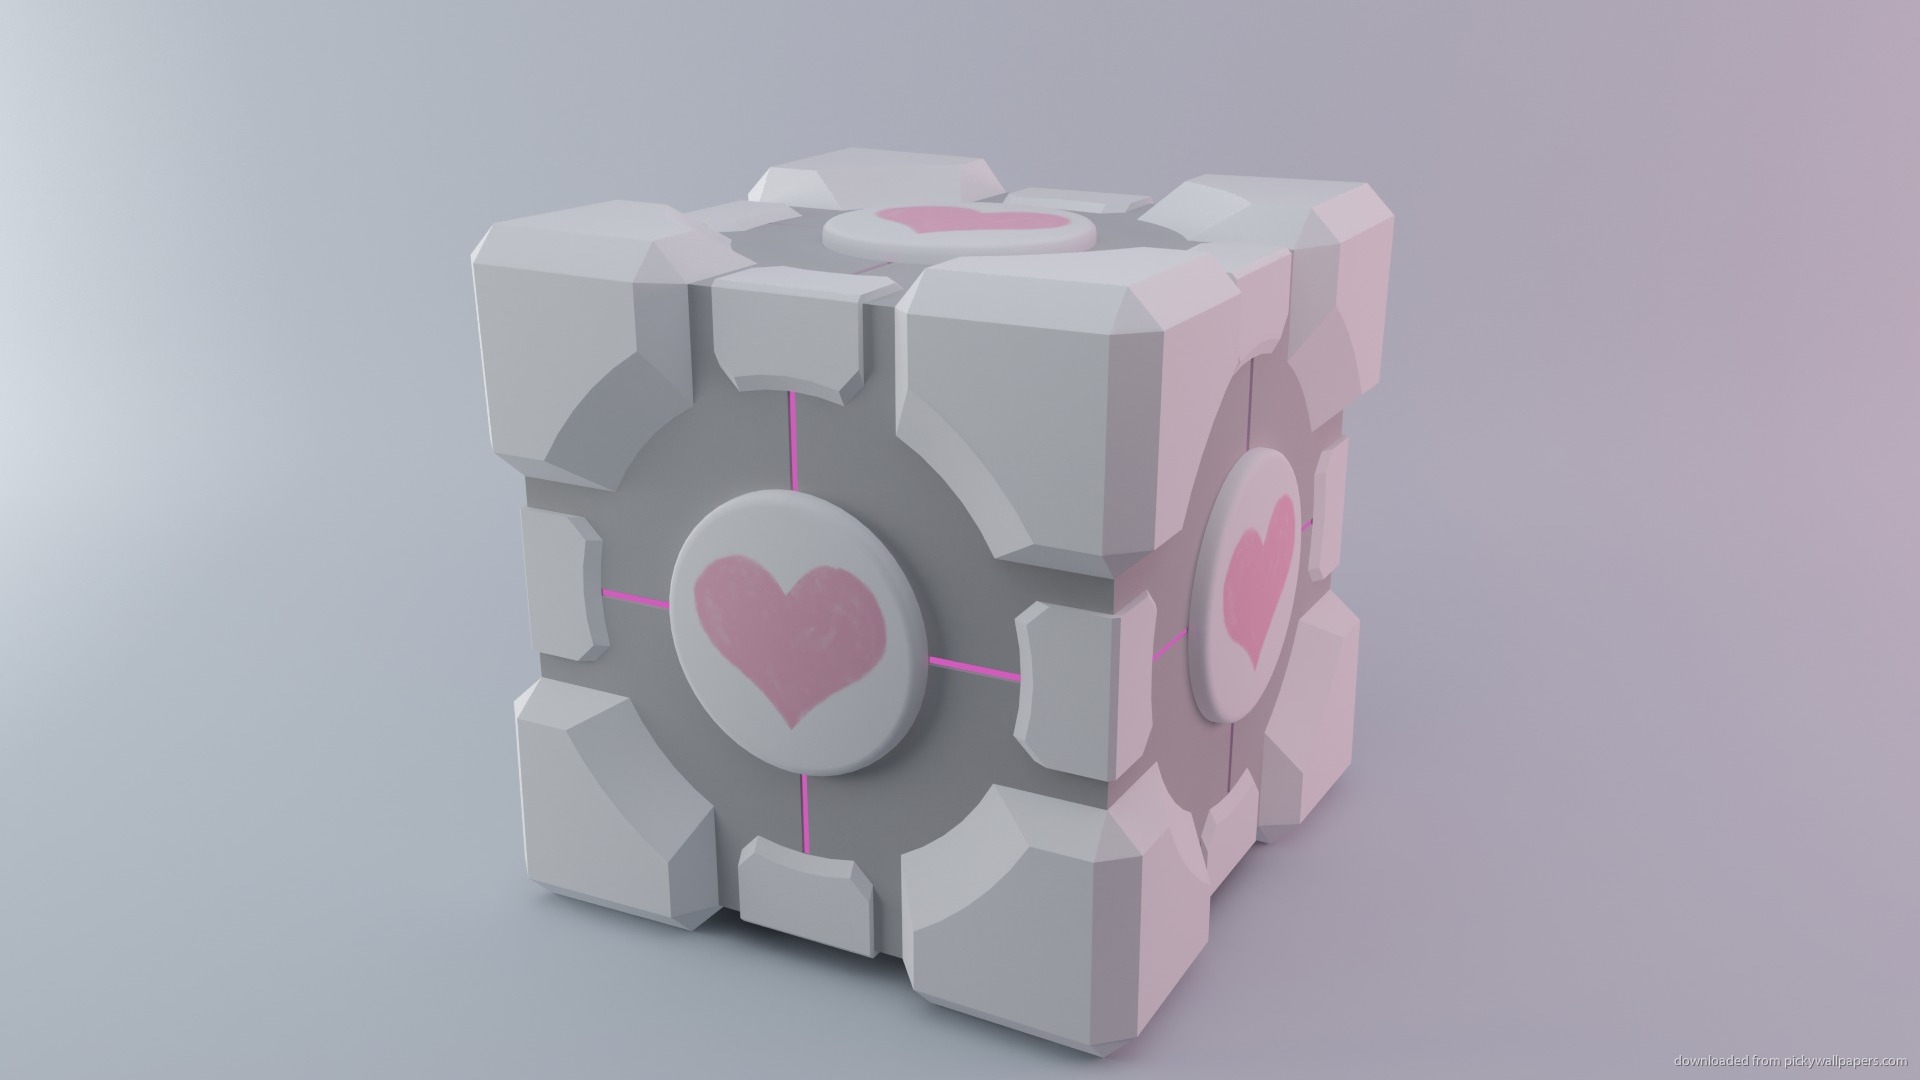 Companion Cube Iphone Wallpaper Companion cube